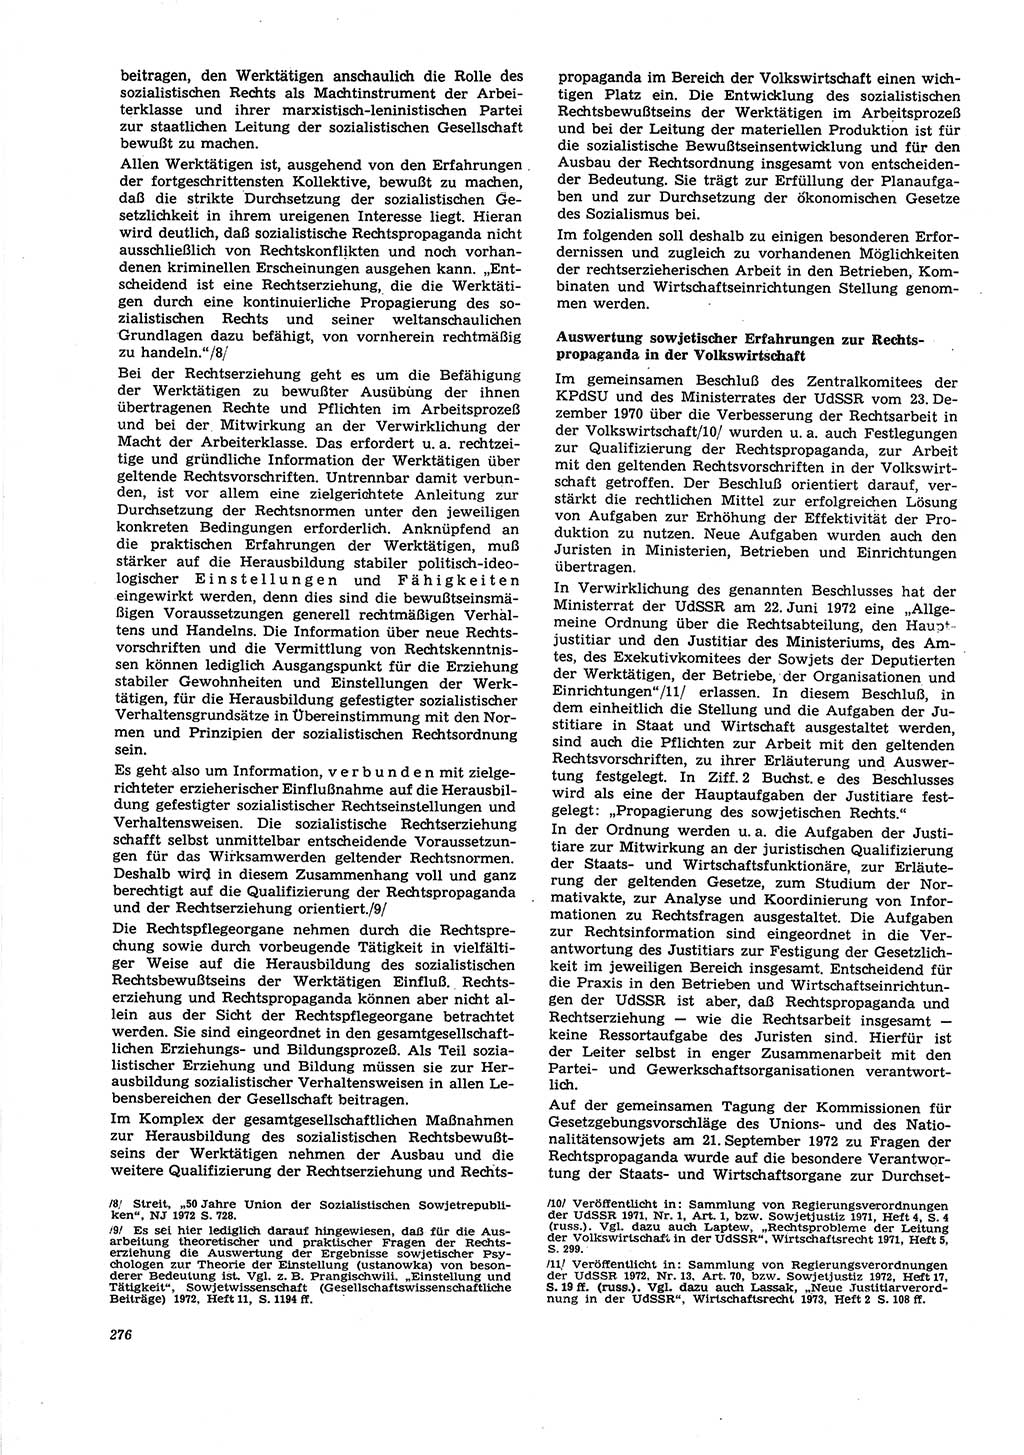 Neue Justiz (NJ), Zeitschrift für Recht und Rechtswissenschaft [Deutsche Demokratische Republik (DDR)], 27. Jahrgang 1973, Seite 276 (NJ DDR 1973, S. 276)